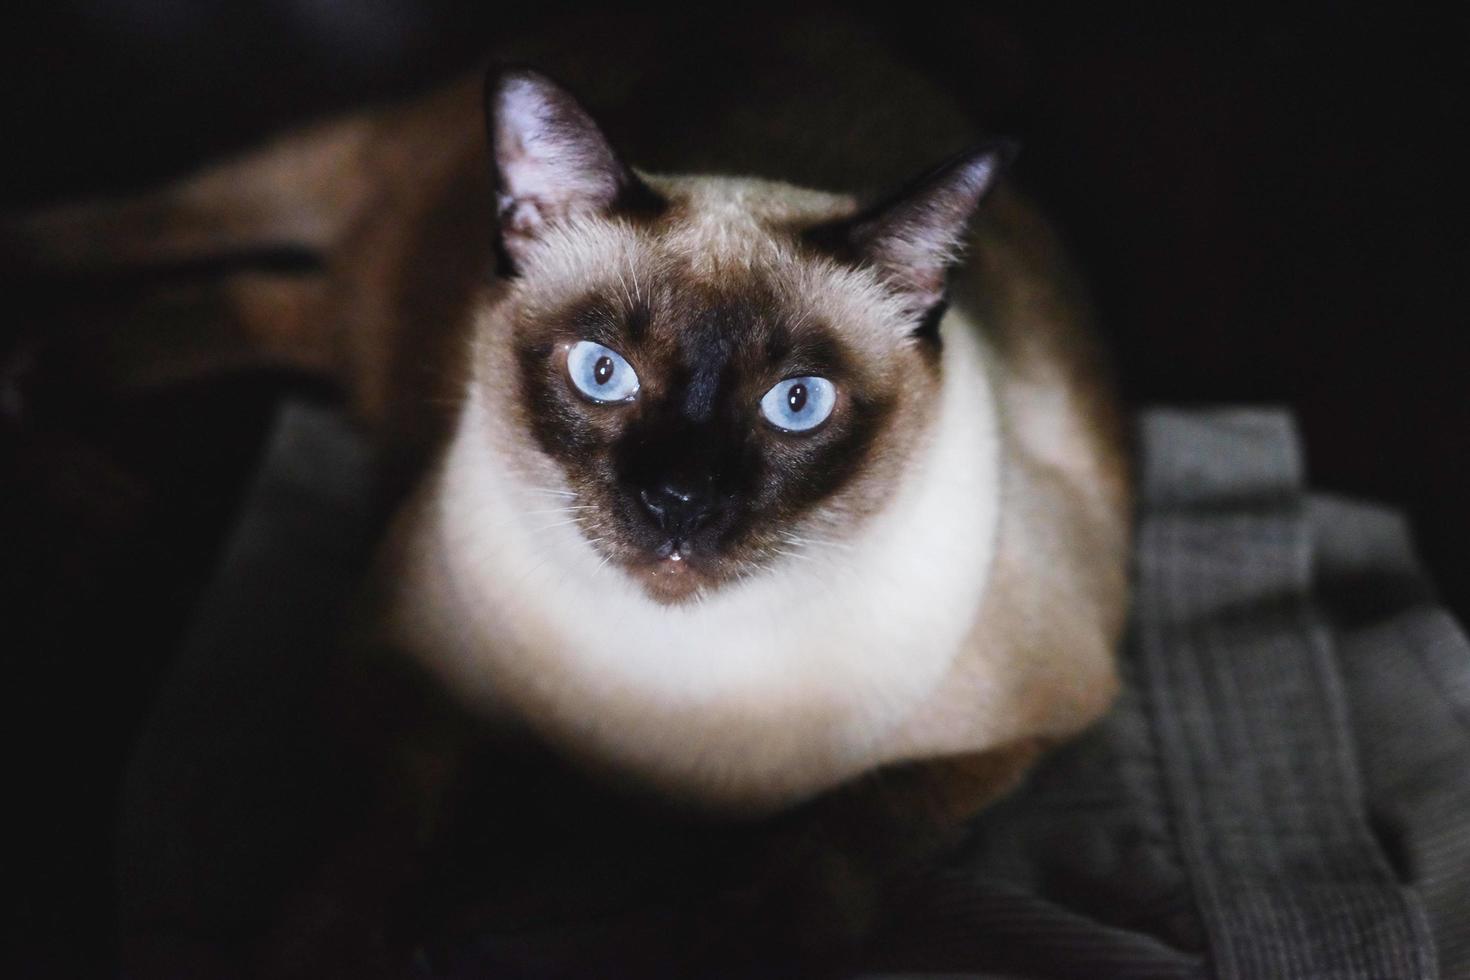 gato siamês com olhos azuis sentado no chão foto